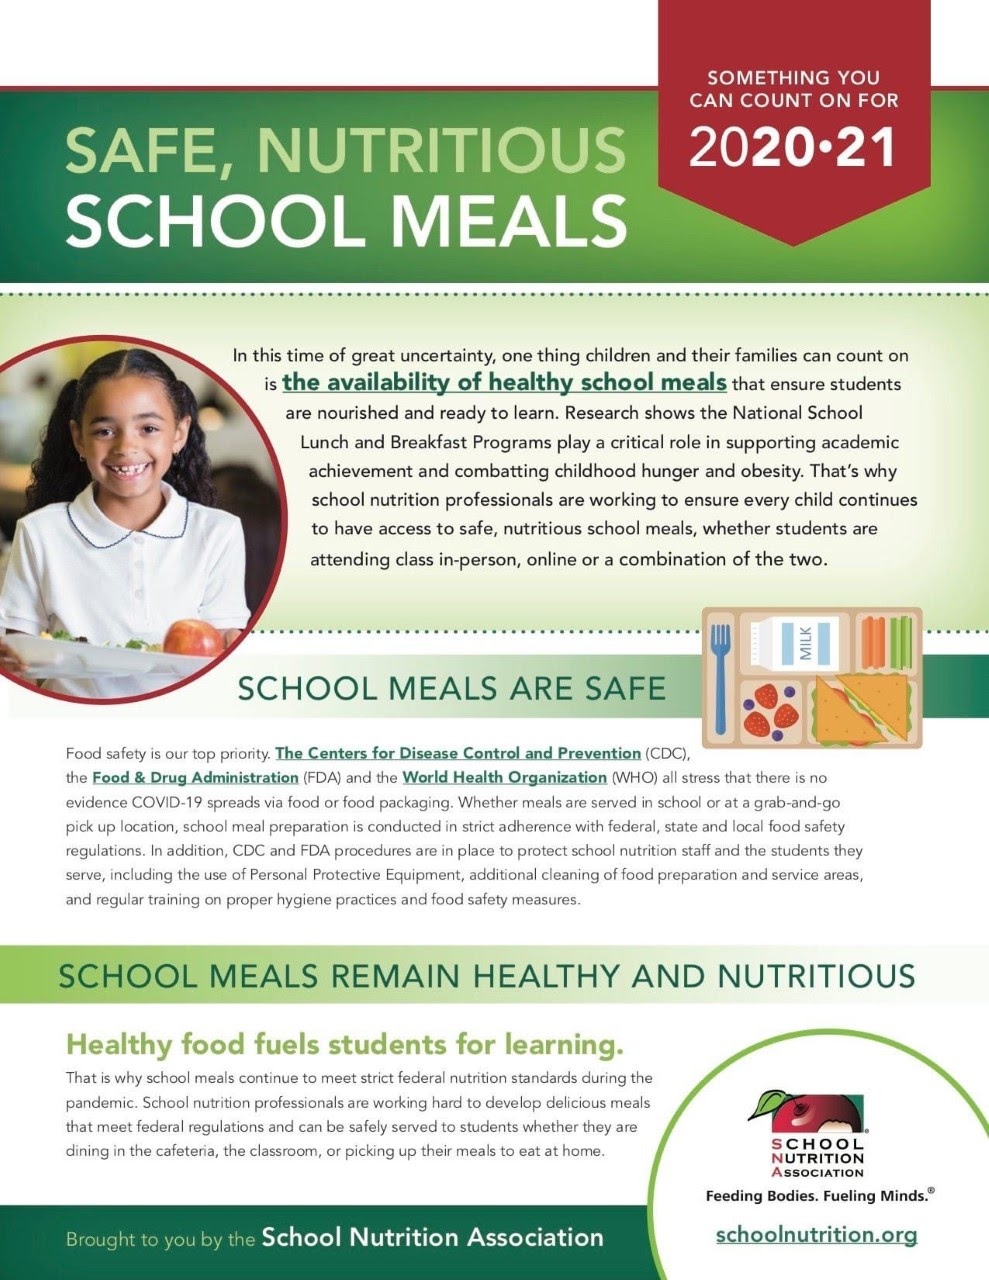 School Meals Info